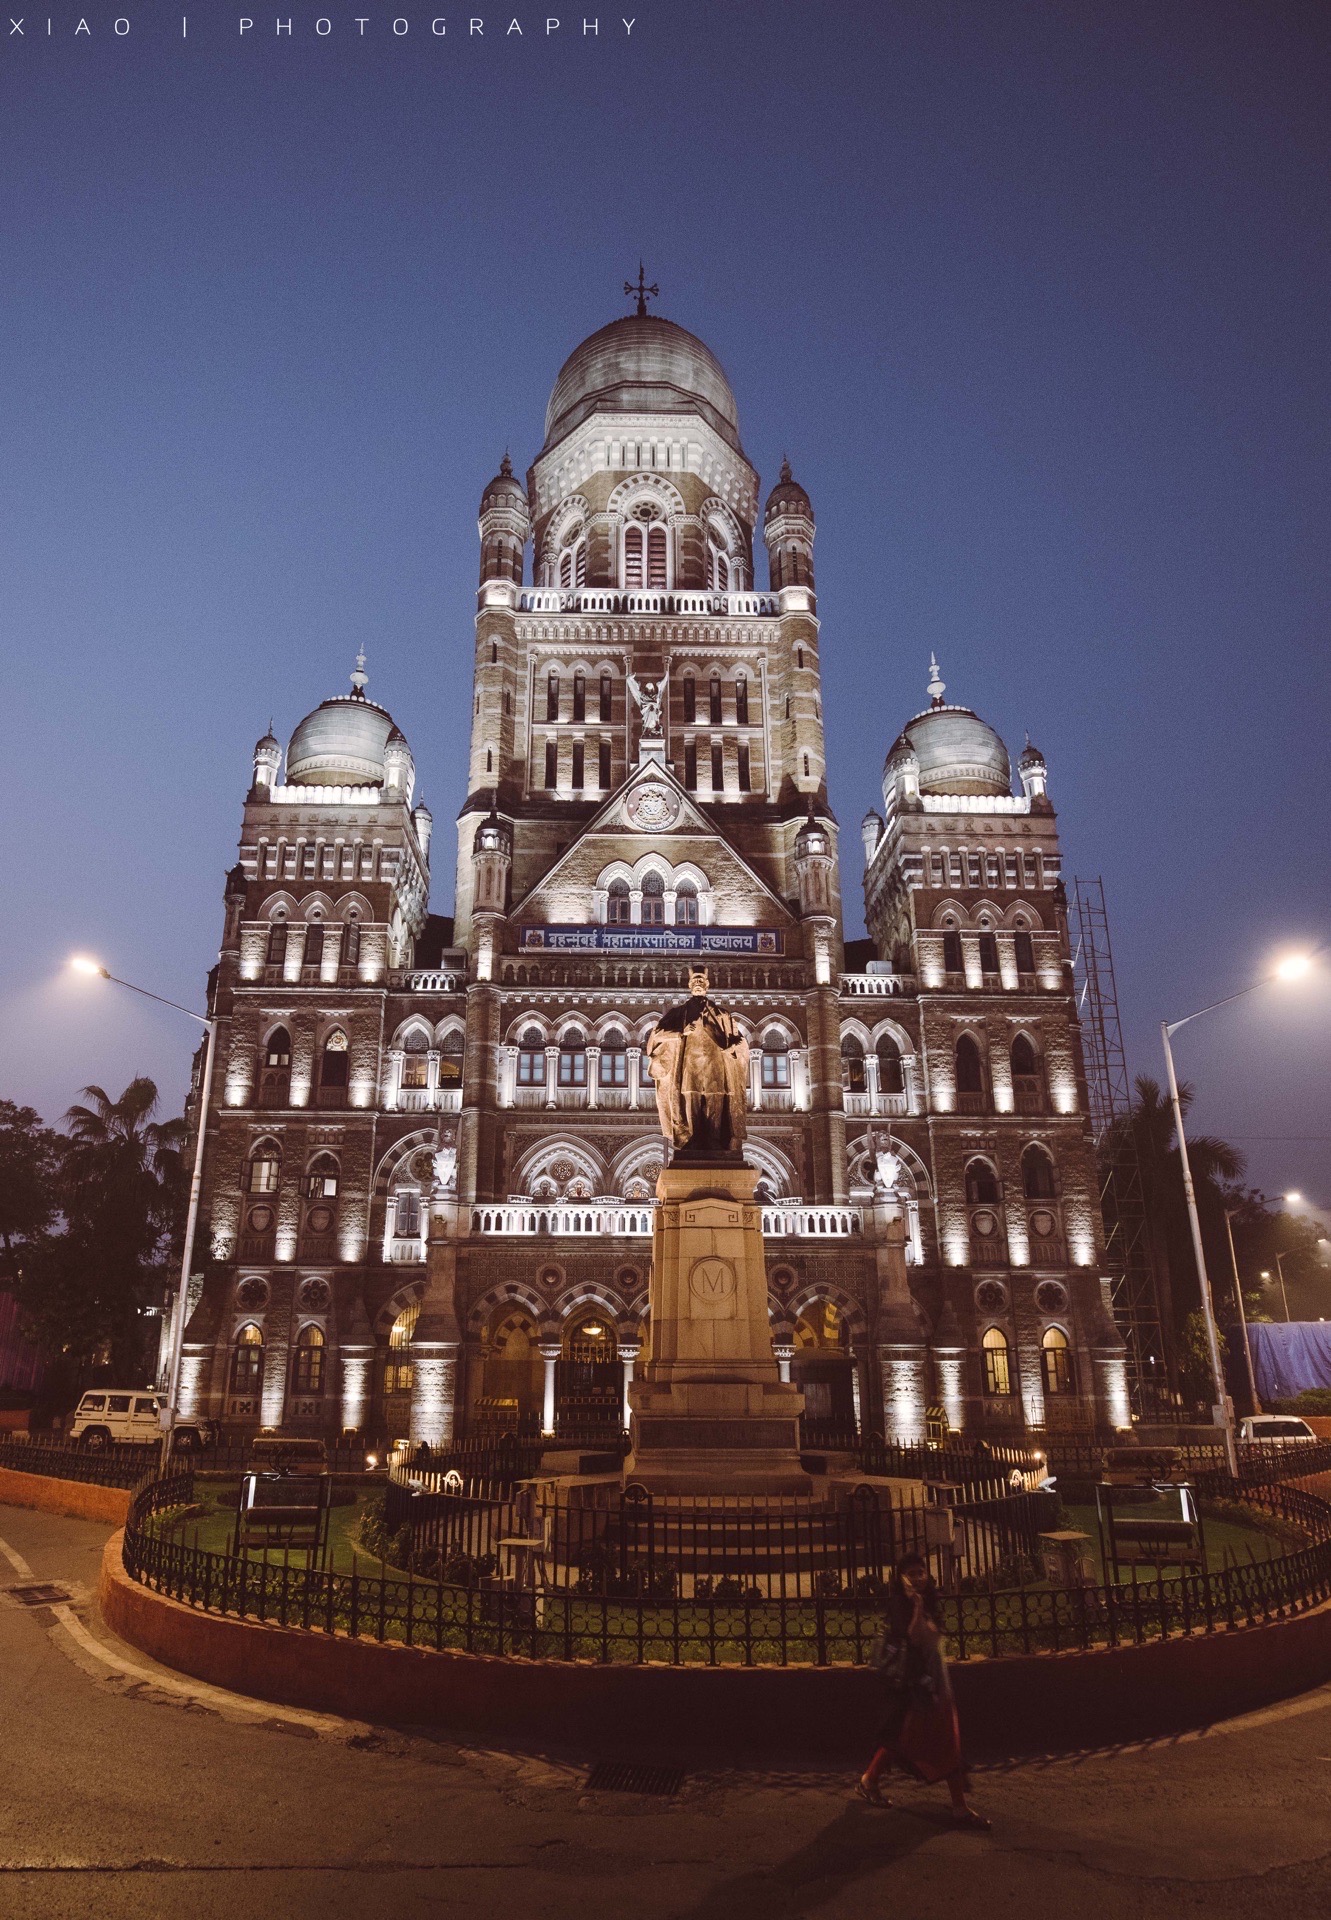 【印度殖民时期建筑:孟买市政公司】&